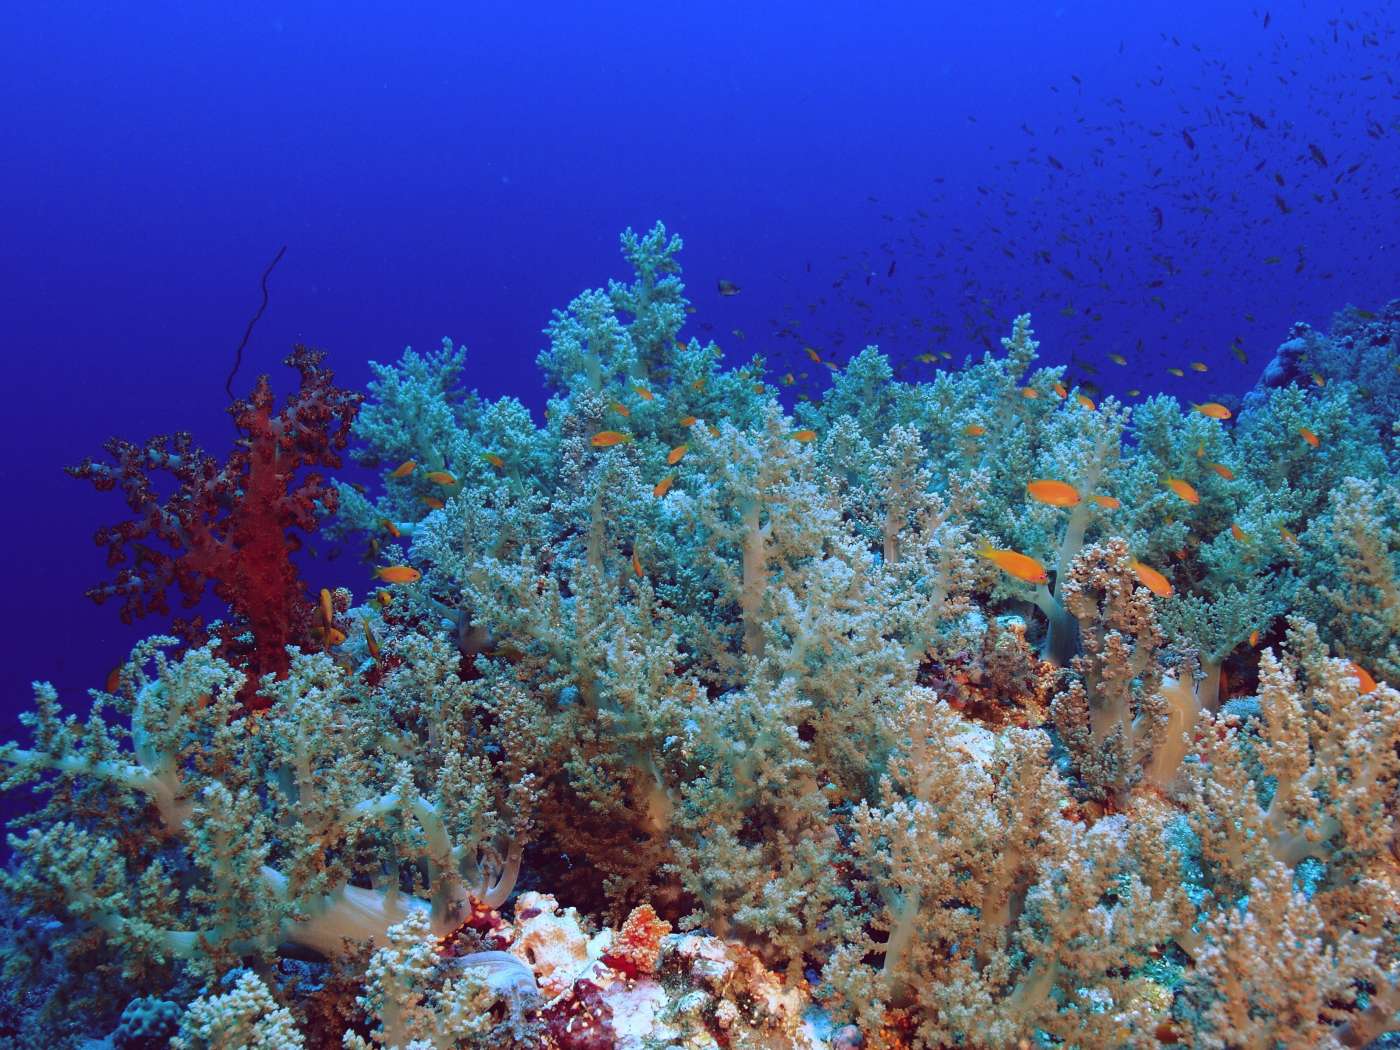 Elphinstone reef in depth.